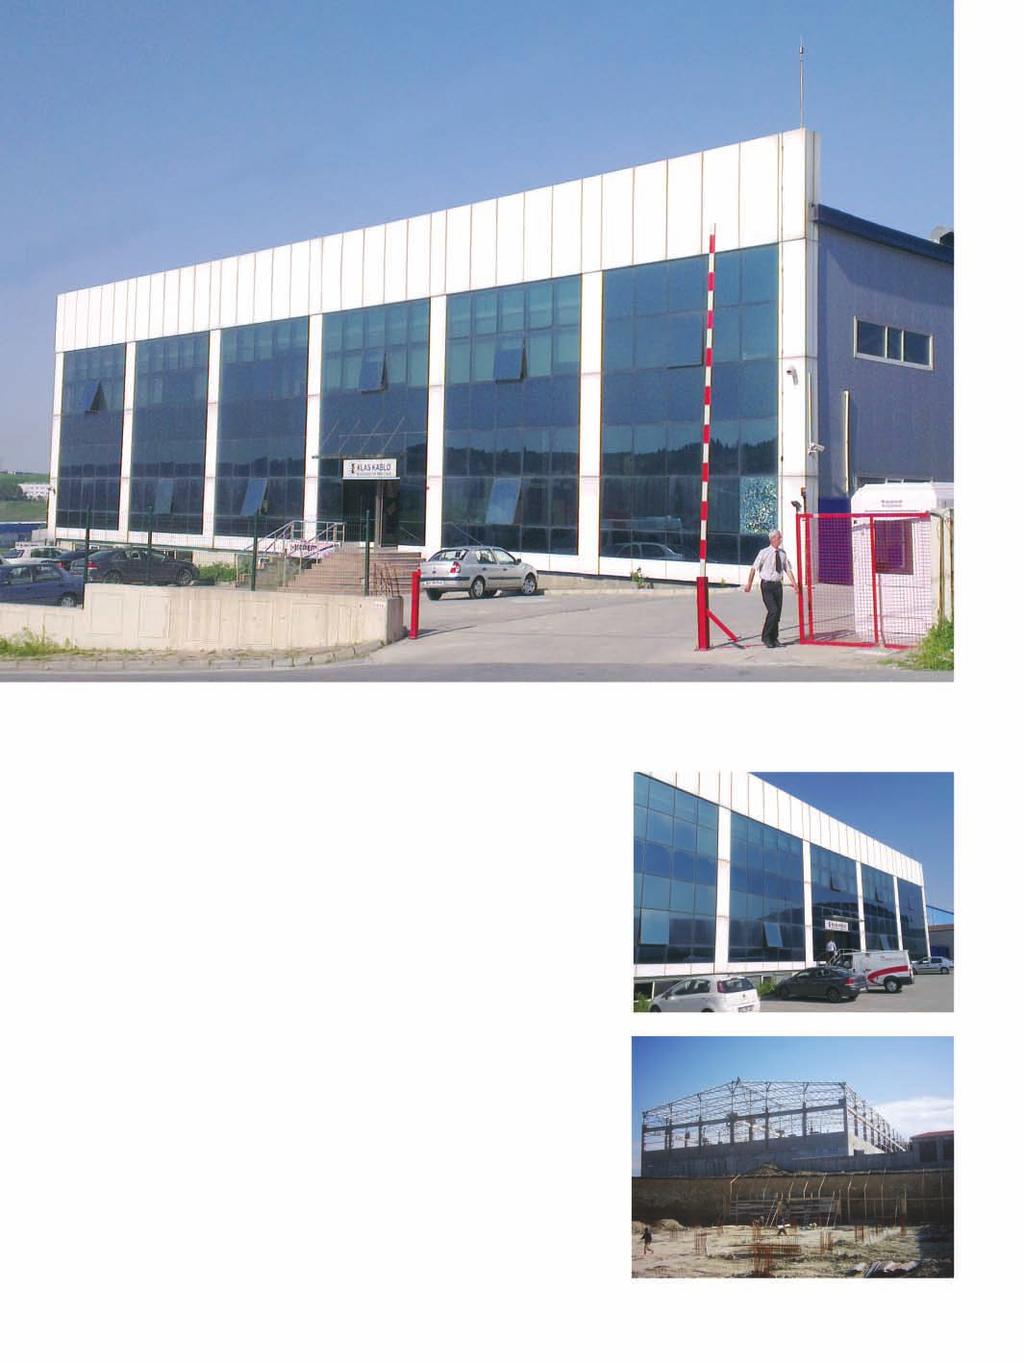 Asdem Lojistik Binası / Asdem Logistics Building Proje Açıklaması: Ekol Adem Fabrika Binası kendi öz sermayemizle yapılarak 2005 te tamamlandı. Toplam 15.